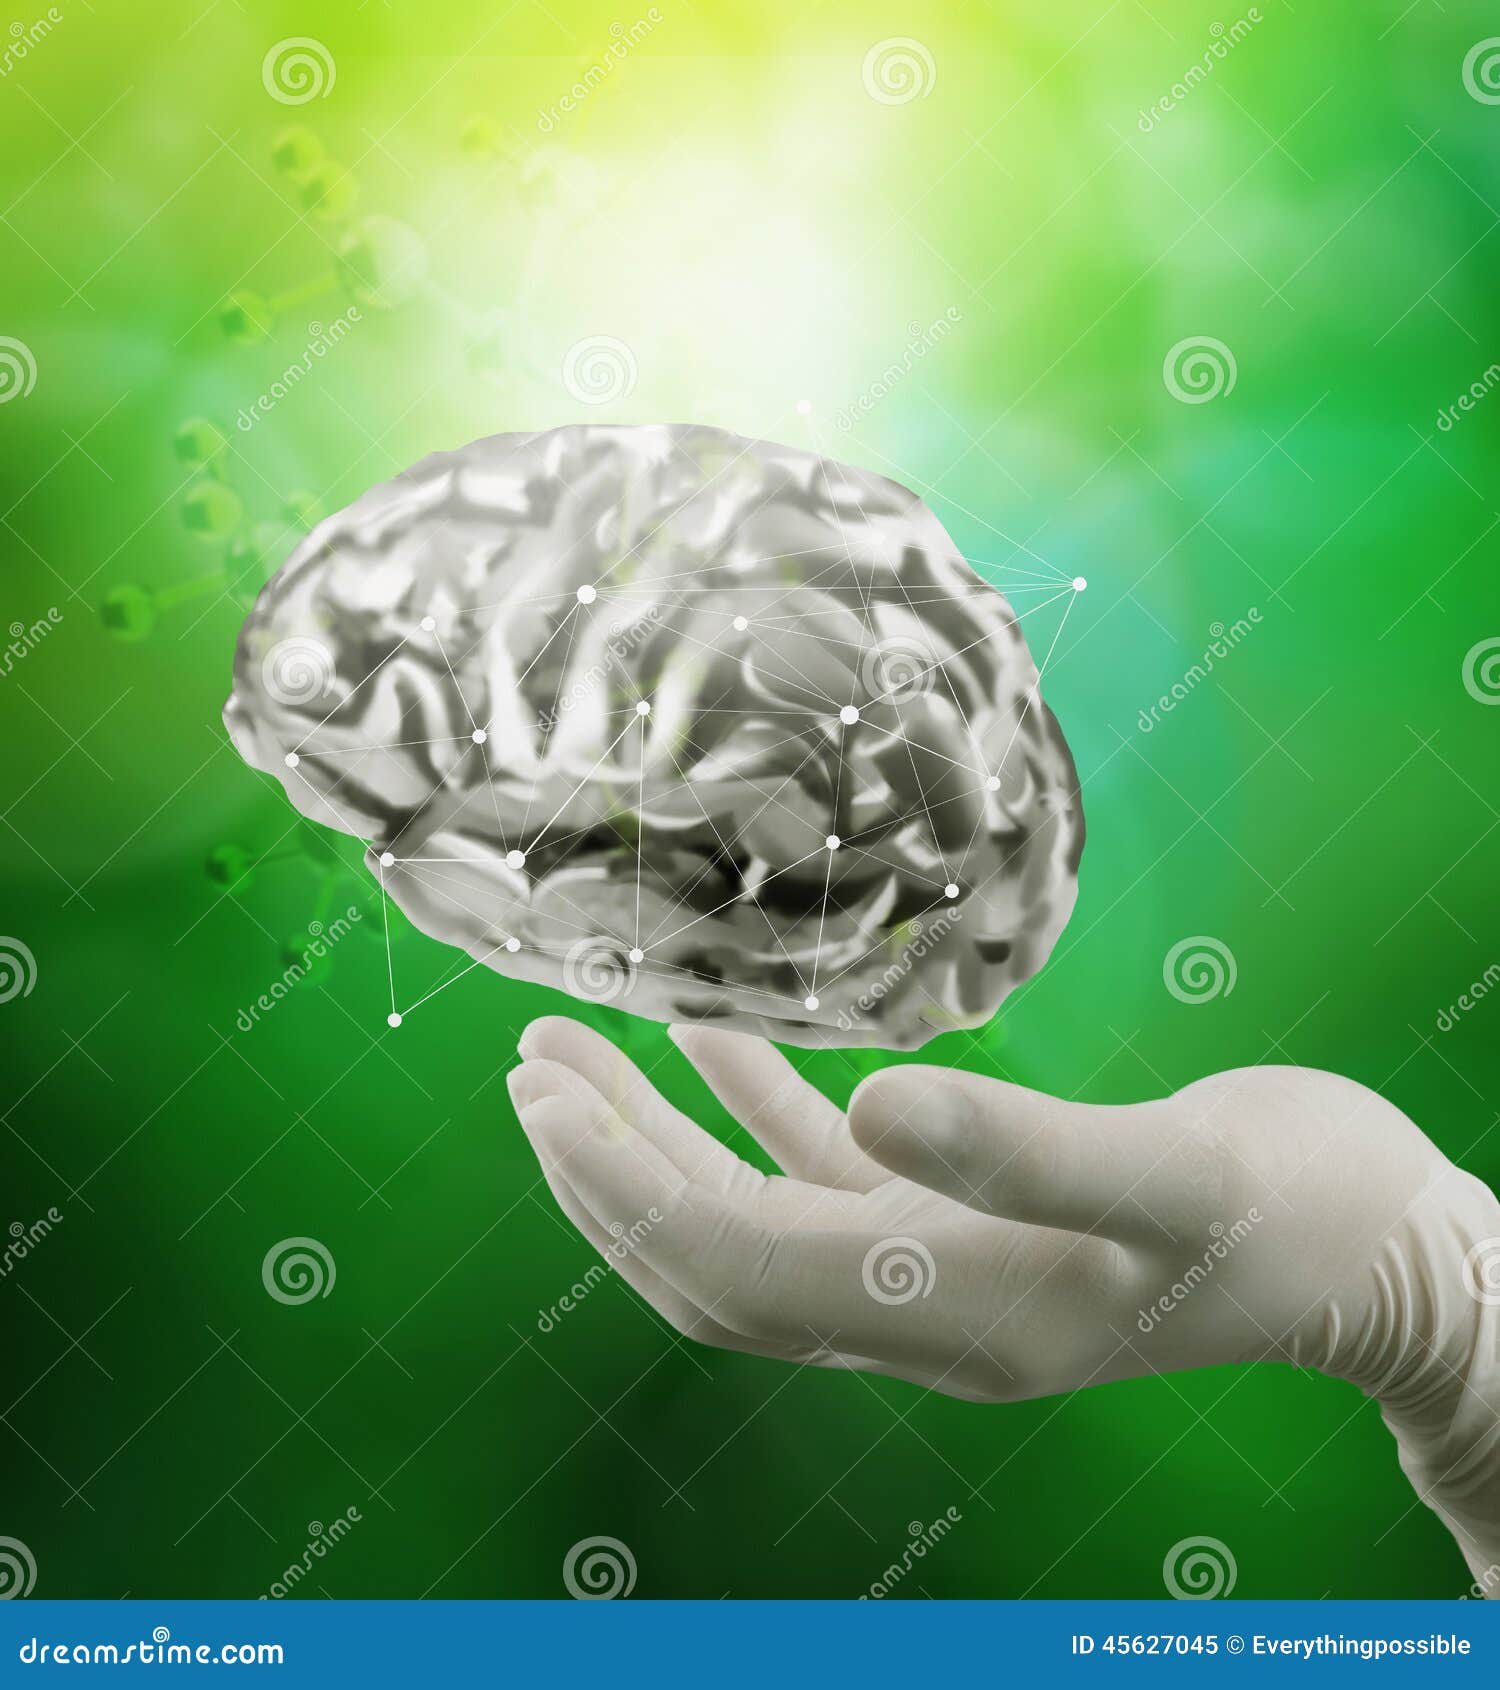 doctor neurologist hand show metal brain